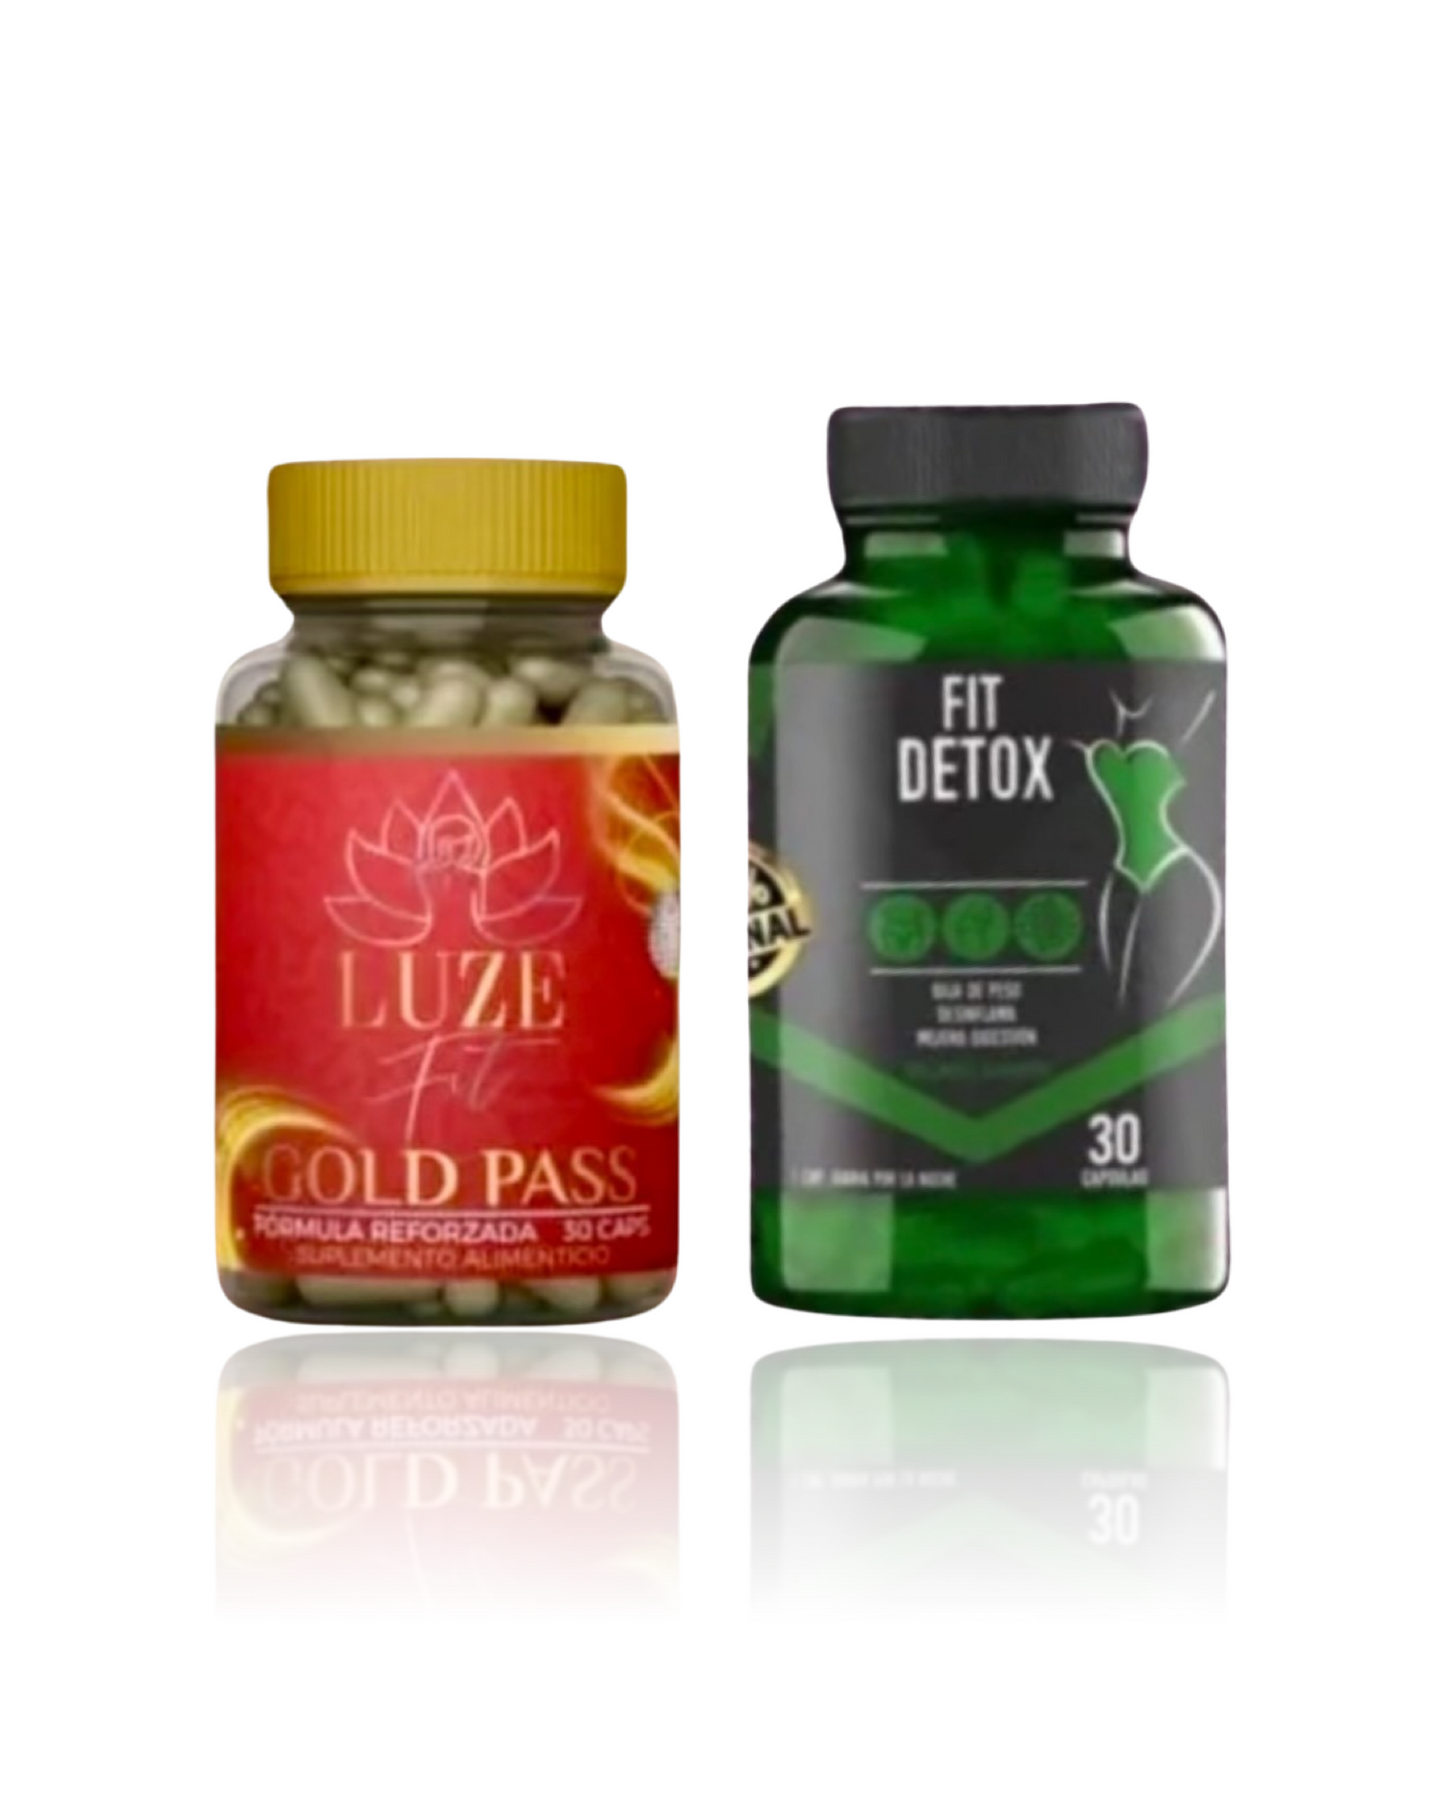 Luze fit gold pass & Fit detox